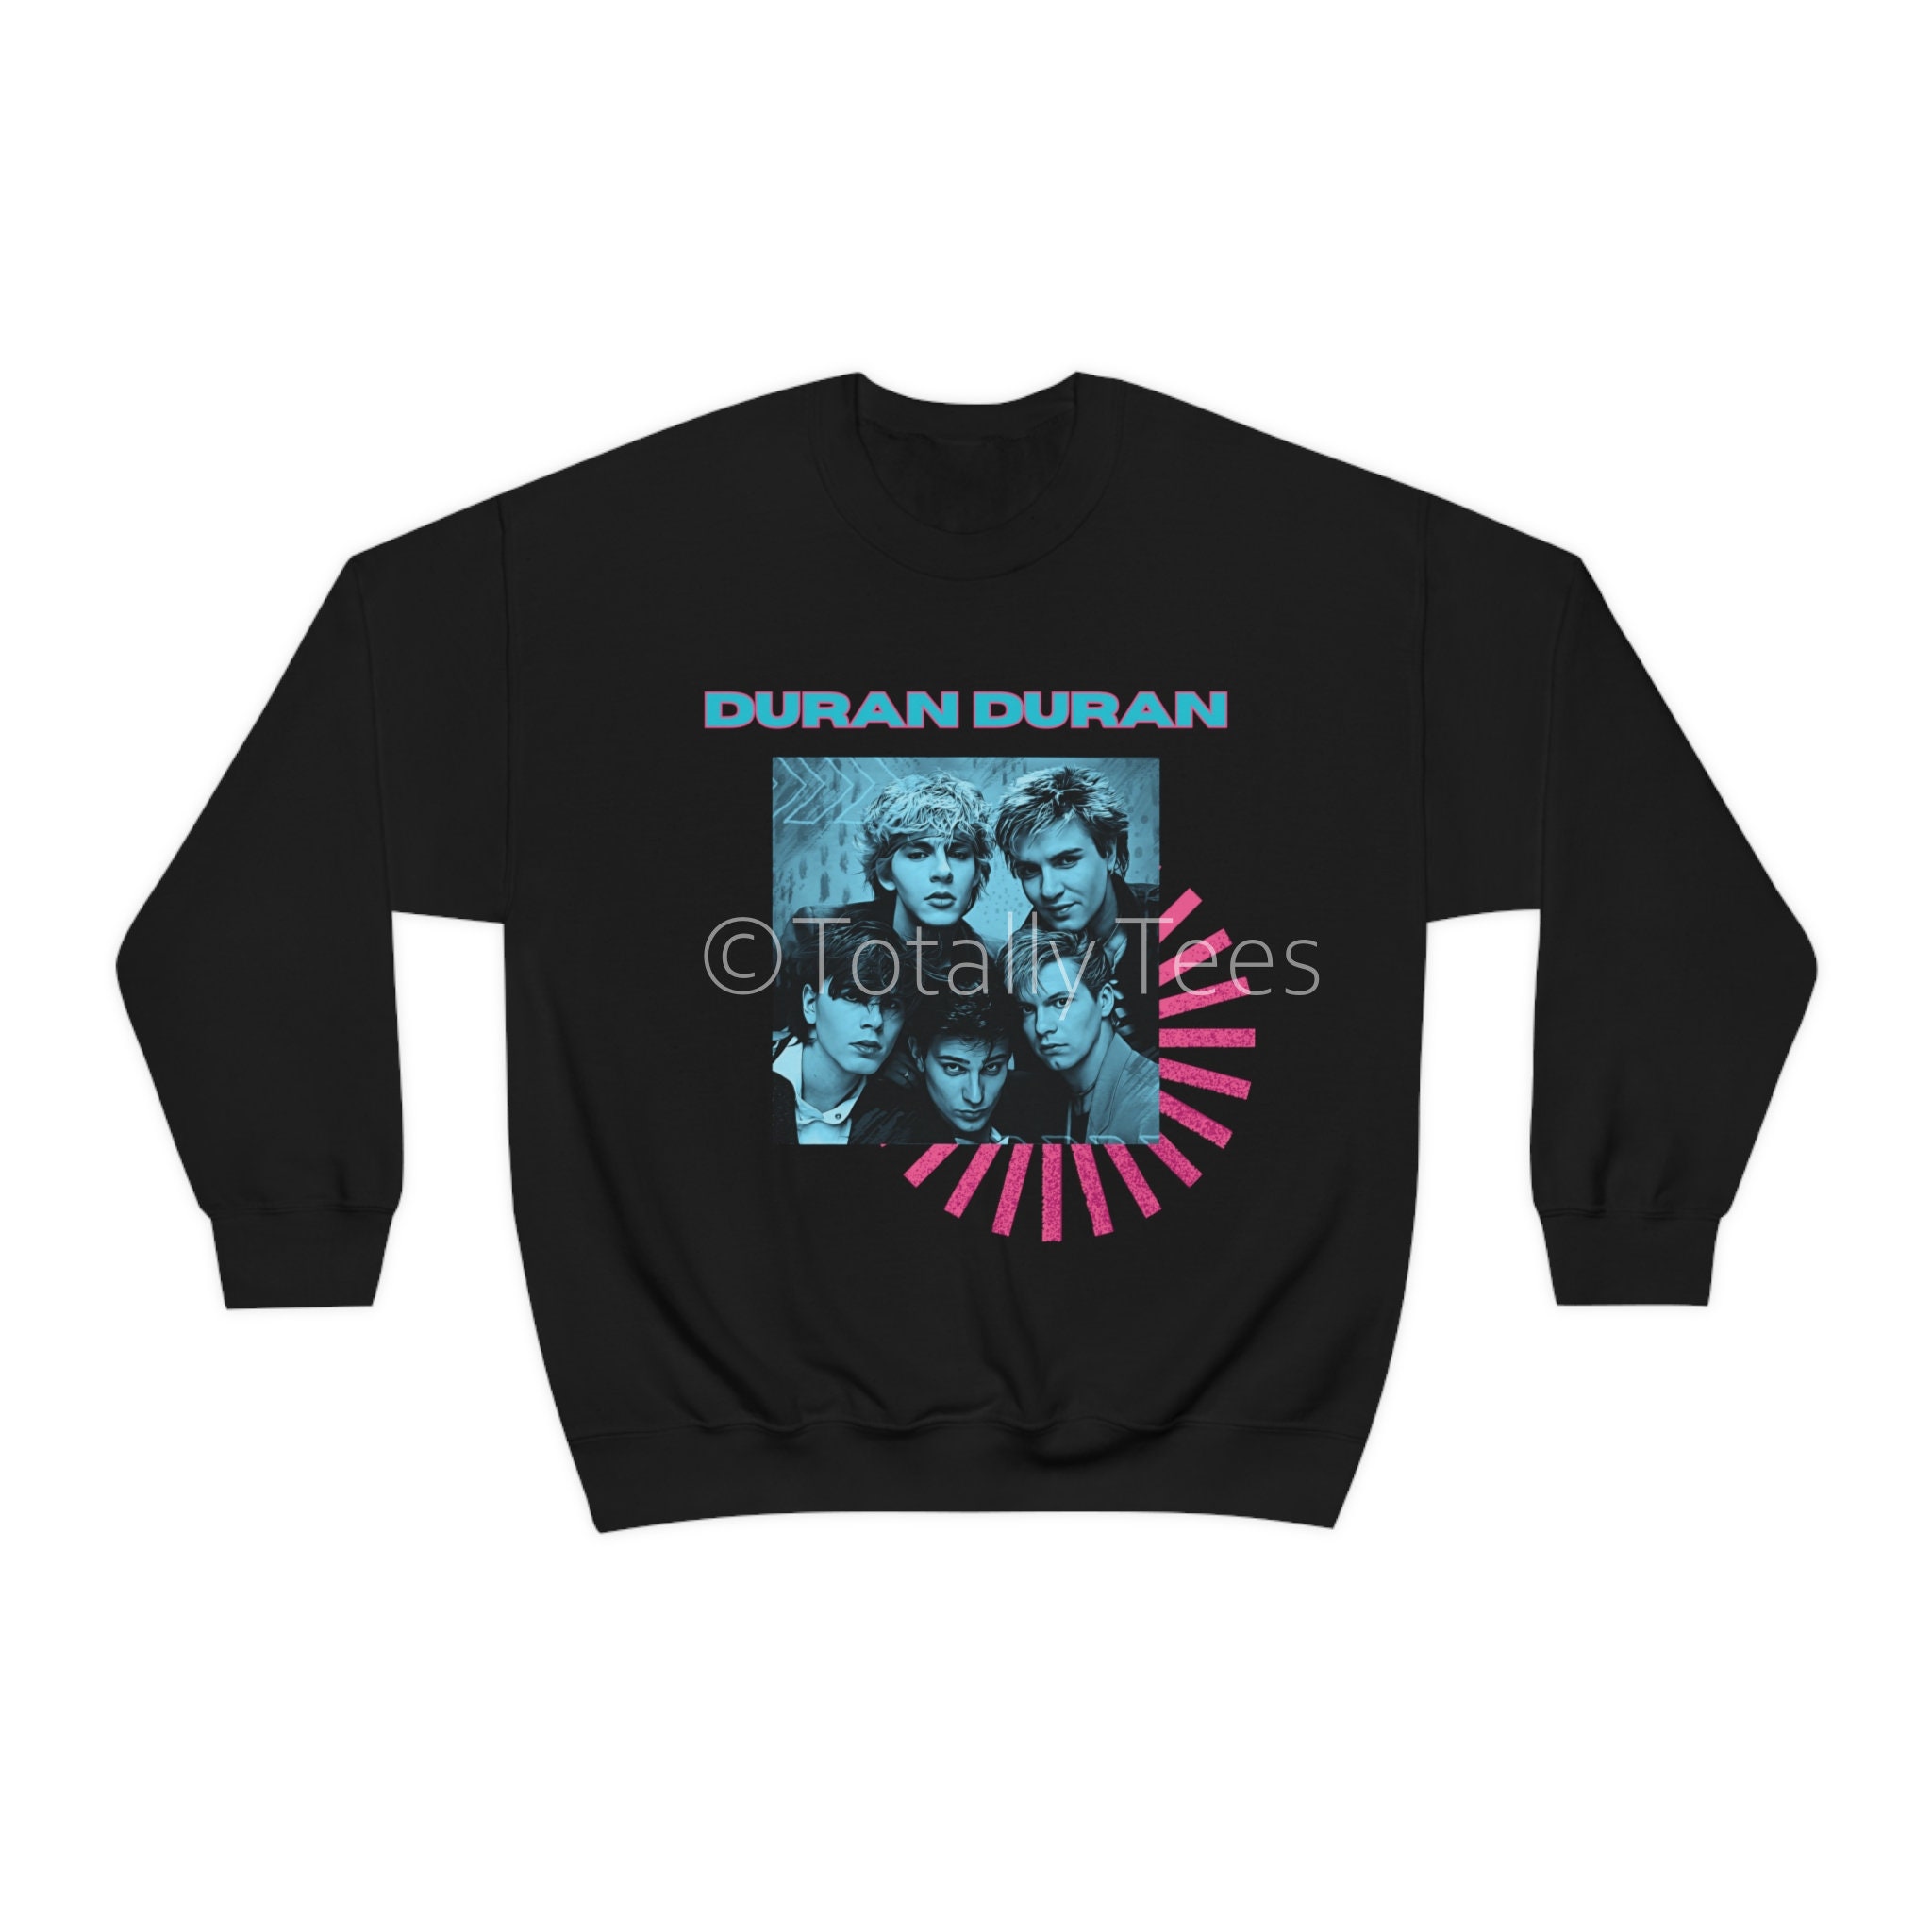 Duran Duran Sweatshirt 1980s Style Retro Black Vintage - Etsy